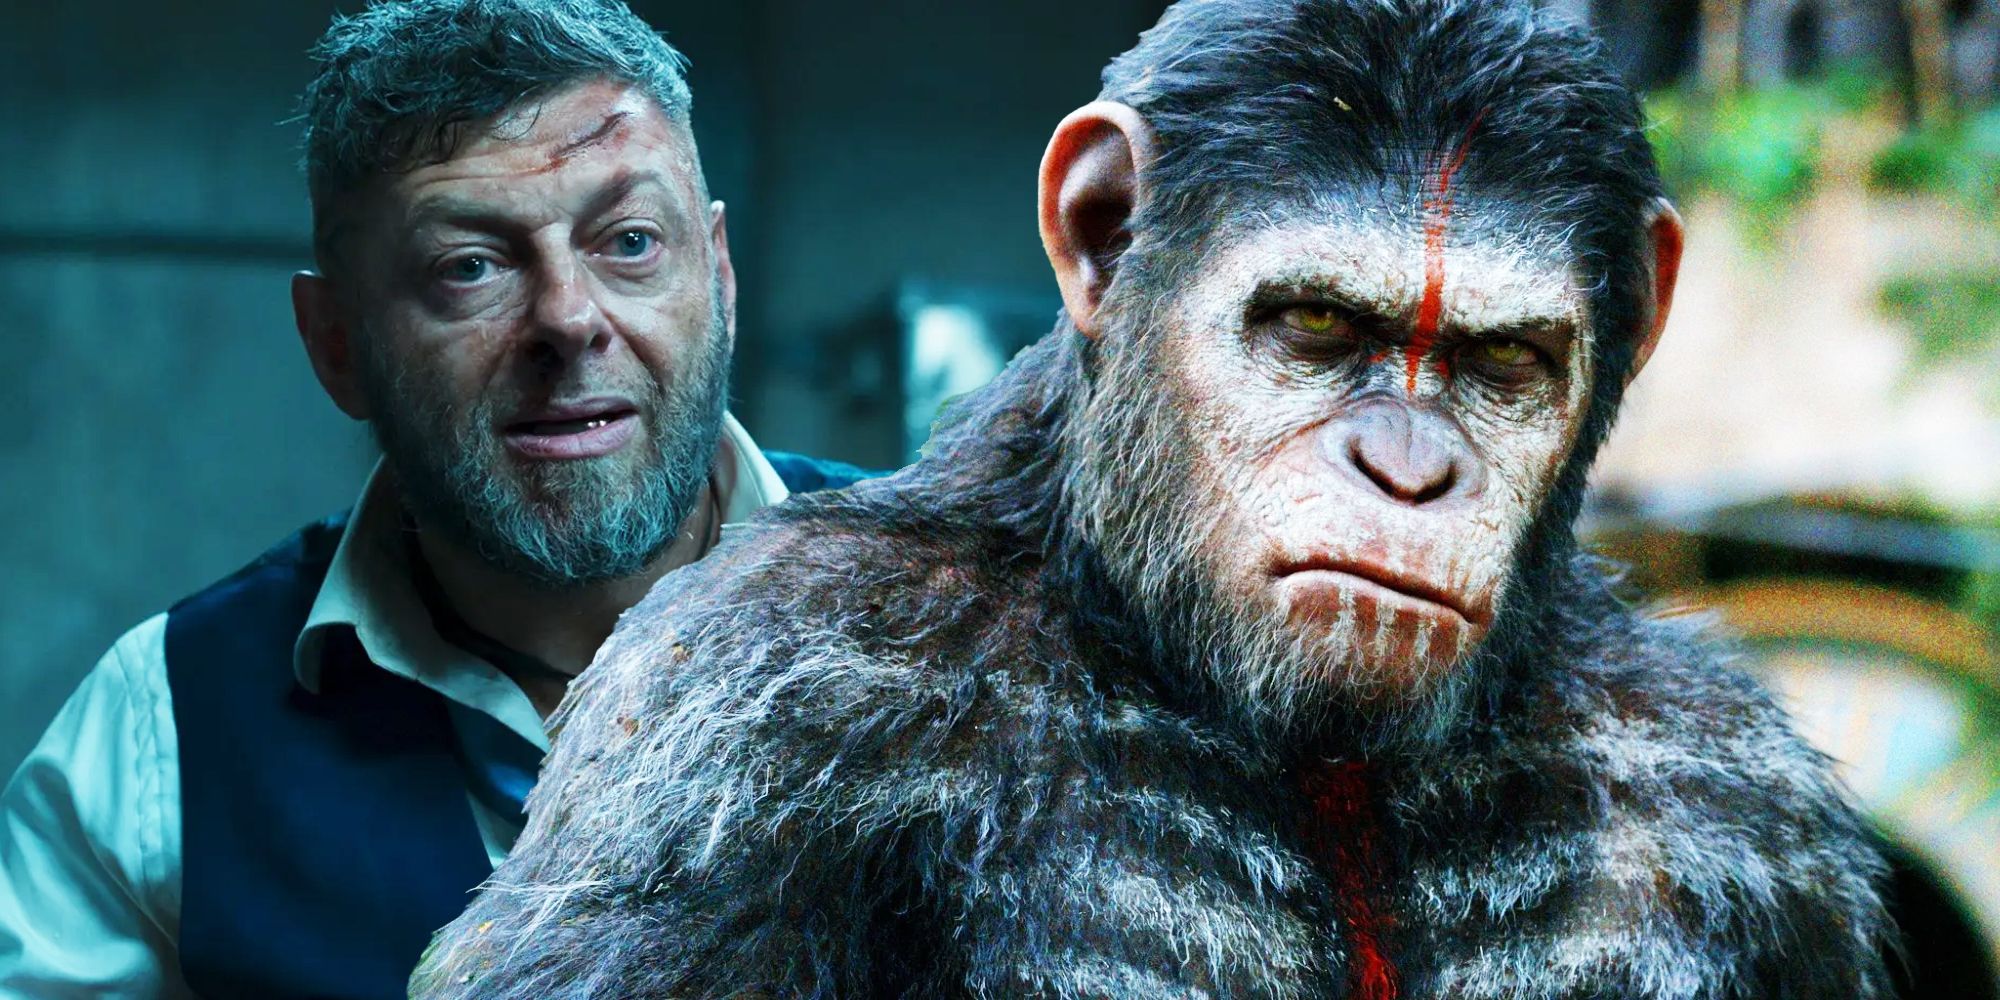 Planet Of The Apes 4 casi traiciona el verdadero legado de la actuación de César de Andy Serkis